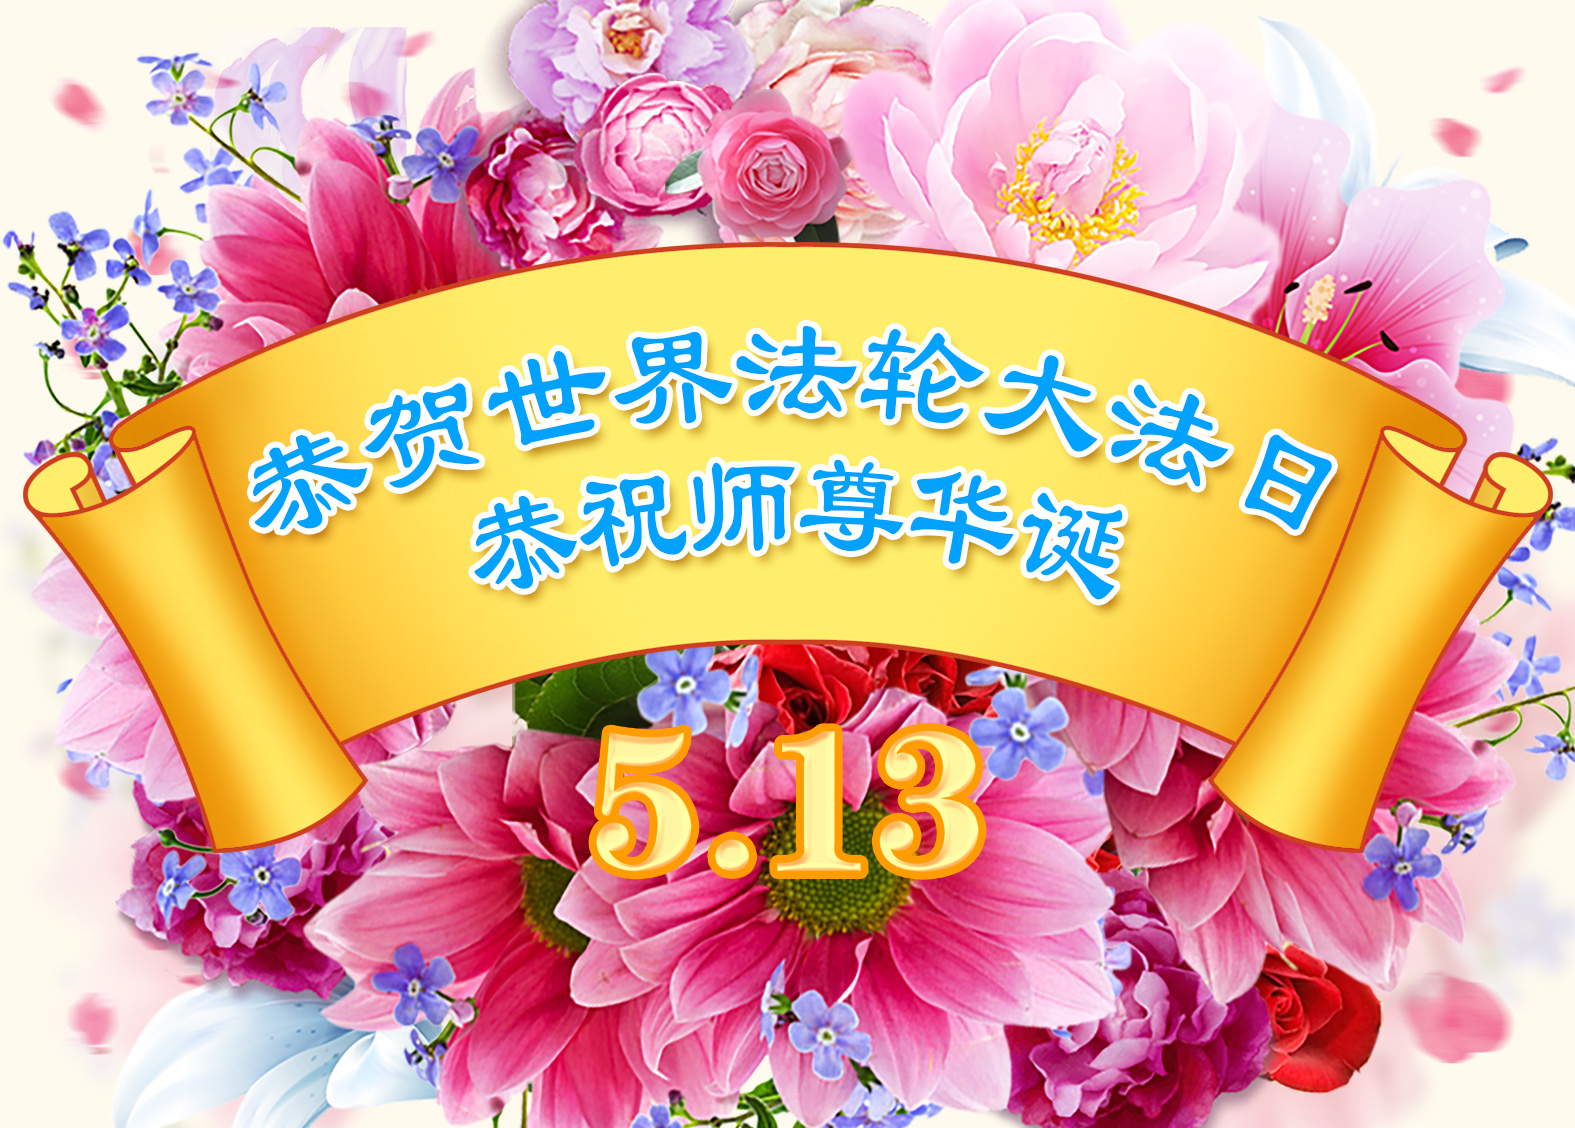 Image for article [Dünya Falun Dafa Günü Kutlaması] Falun Dafa'dan Gelen Merhamet ve Bilgelik